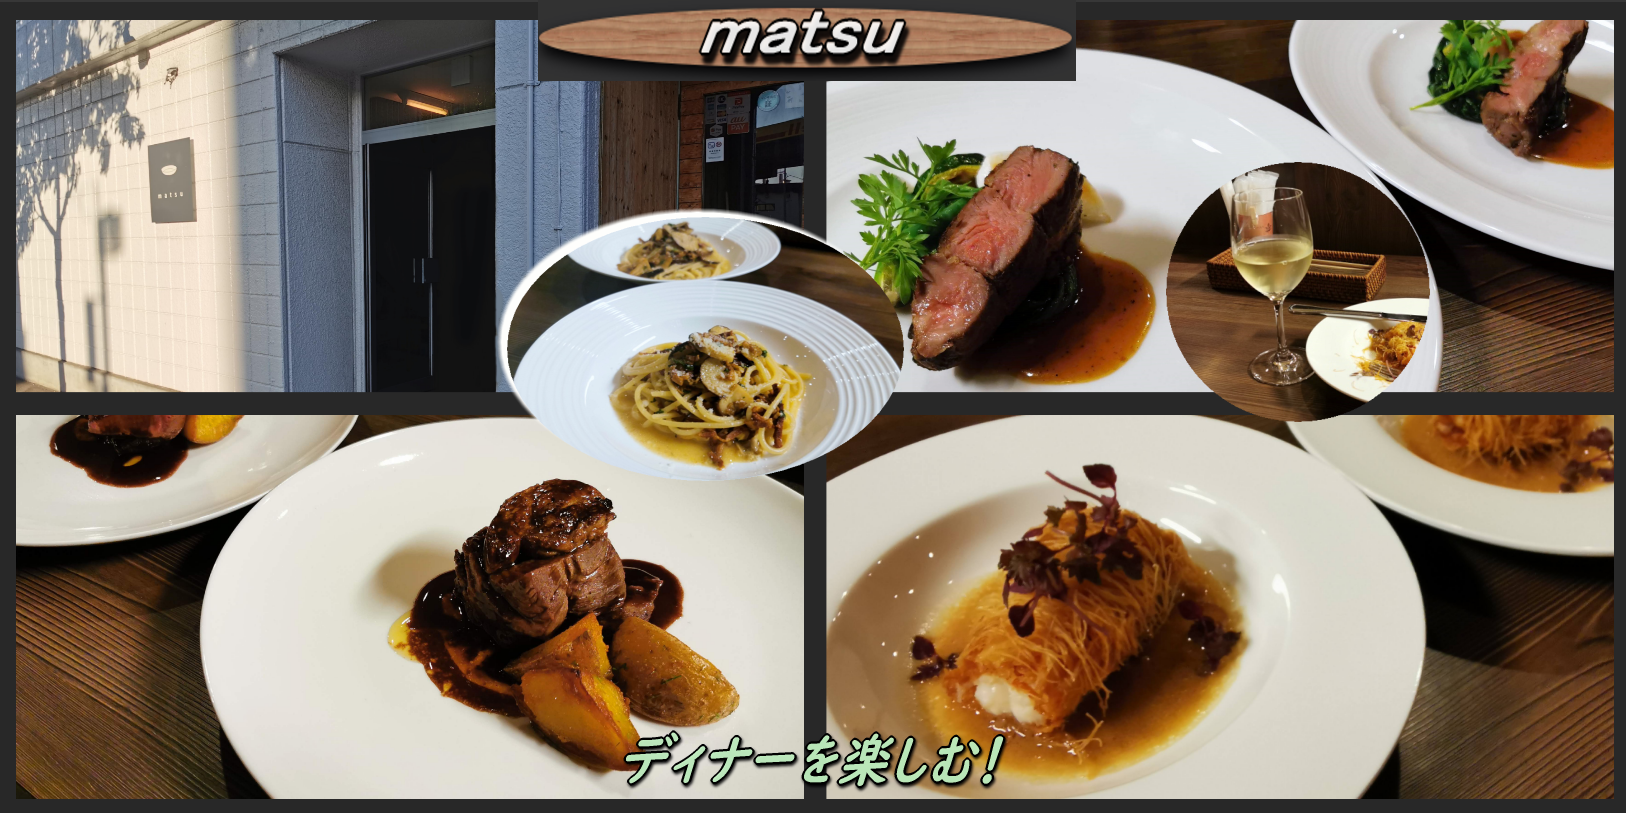 本町のmatsuで久々のディナーを楽しむ 函館の飲み食い日記 Powered By ライブドアブログ